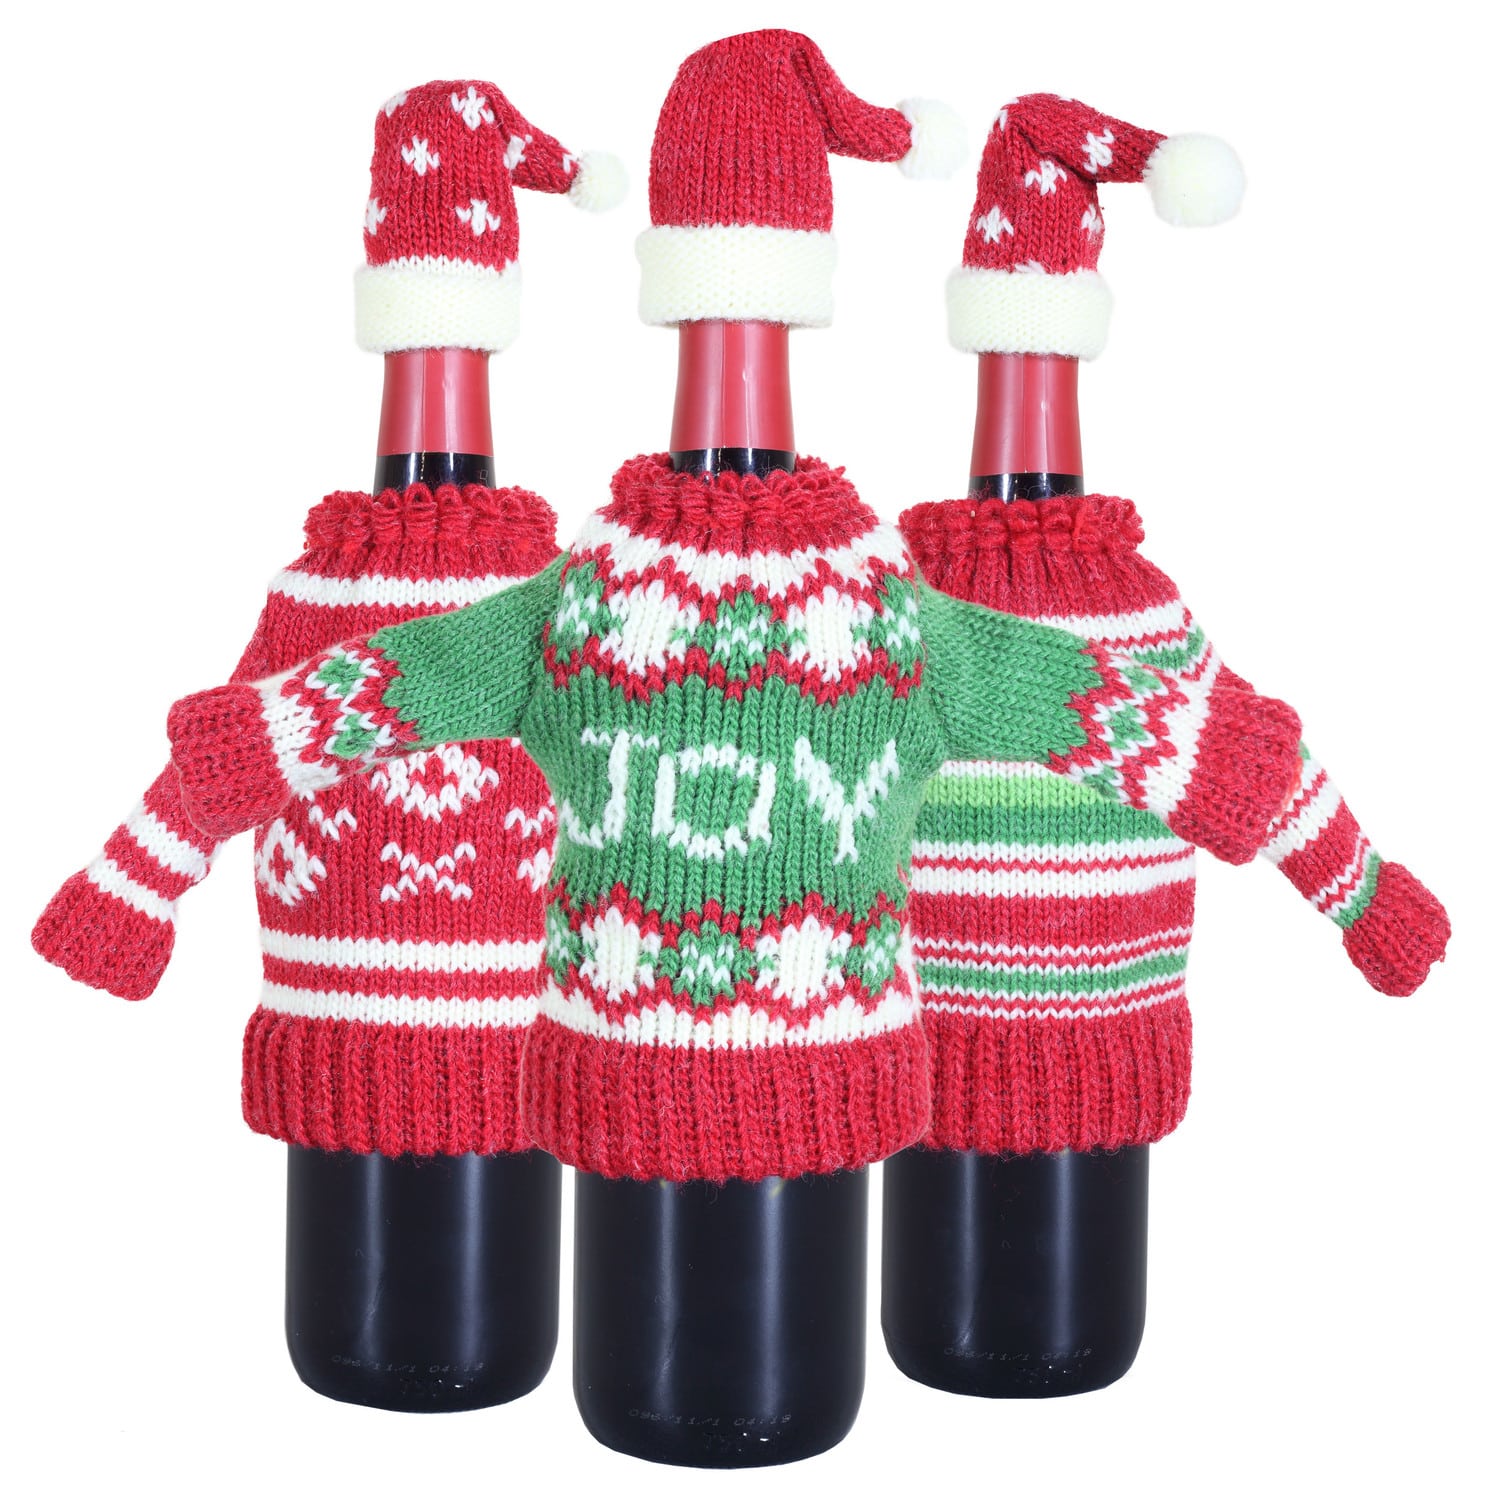 Wine-bottle-sweaters-IMG_3255.jpg